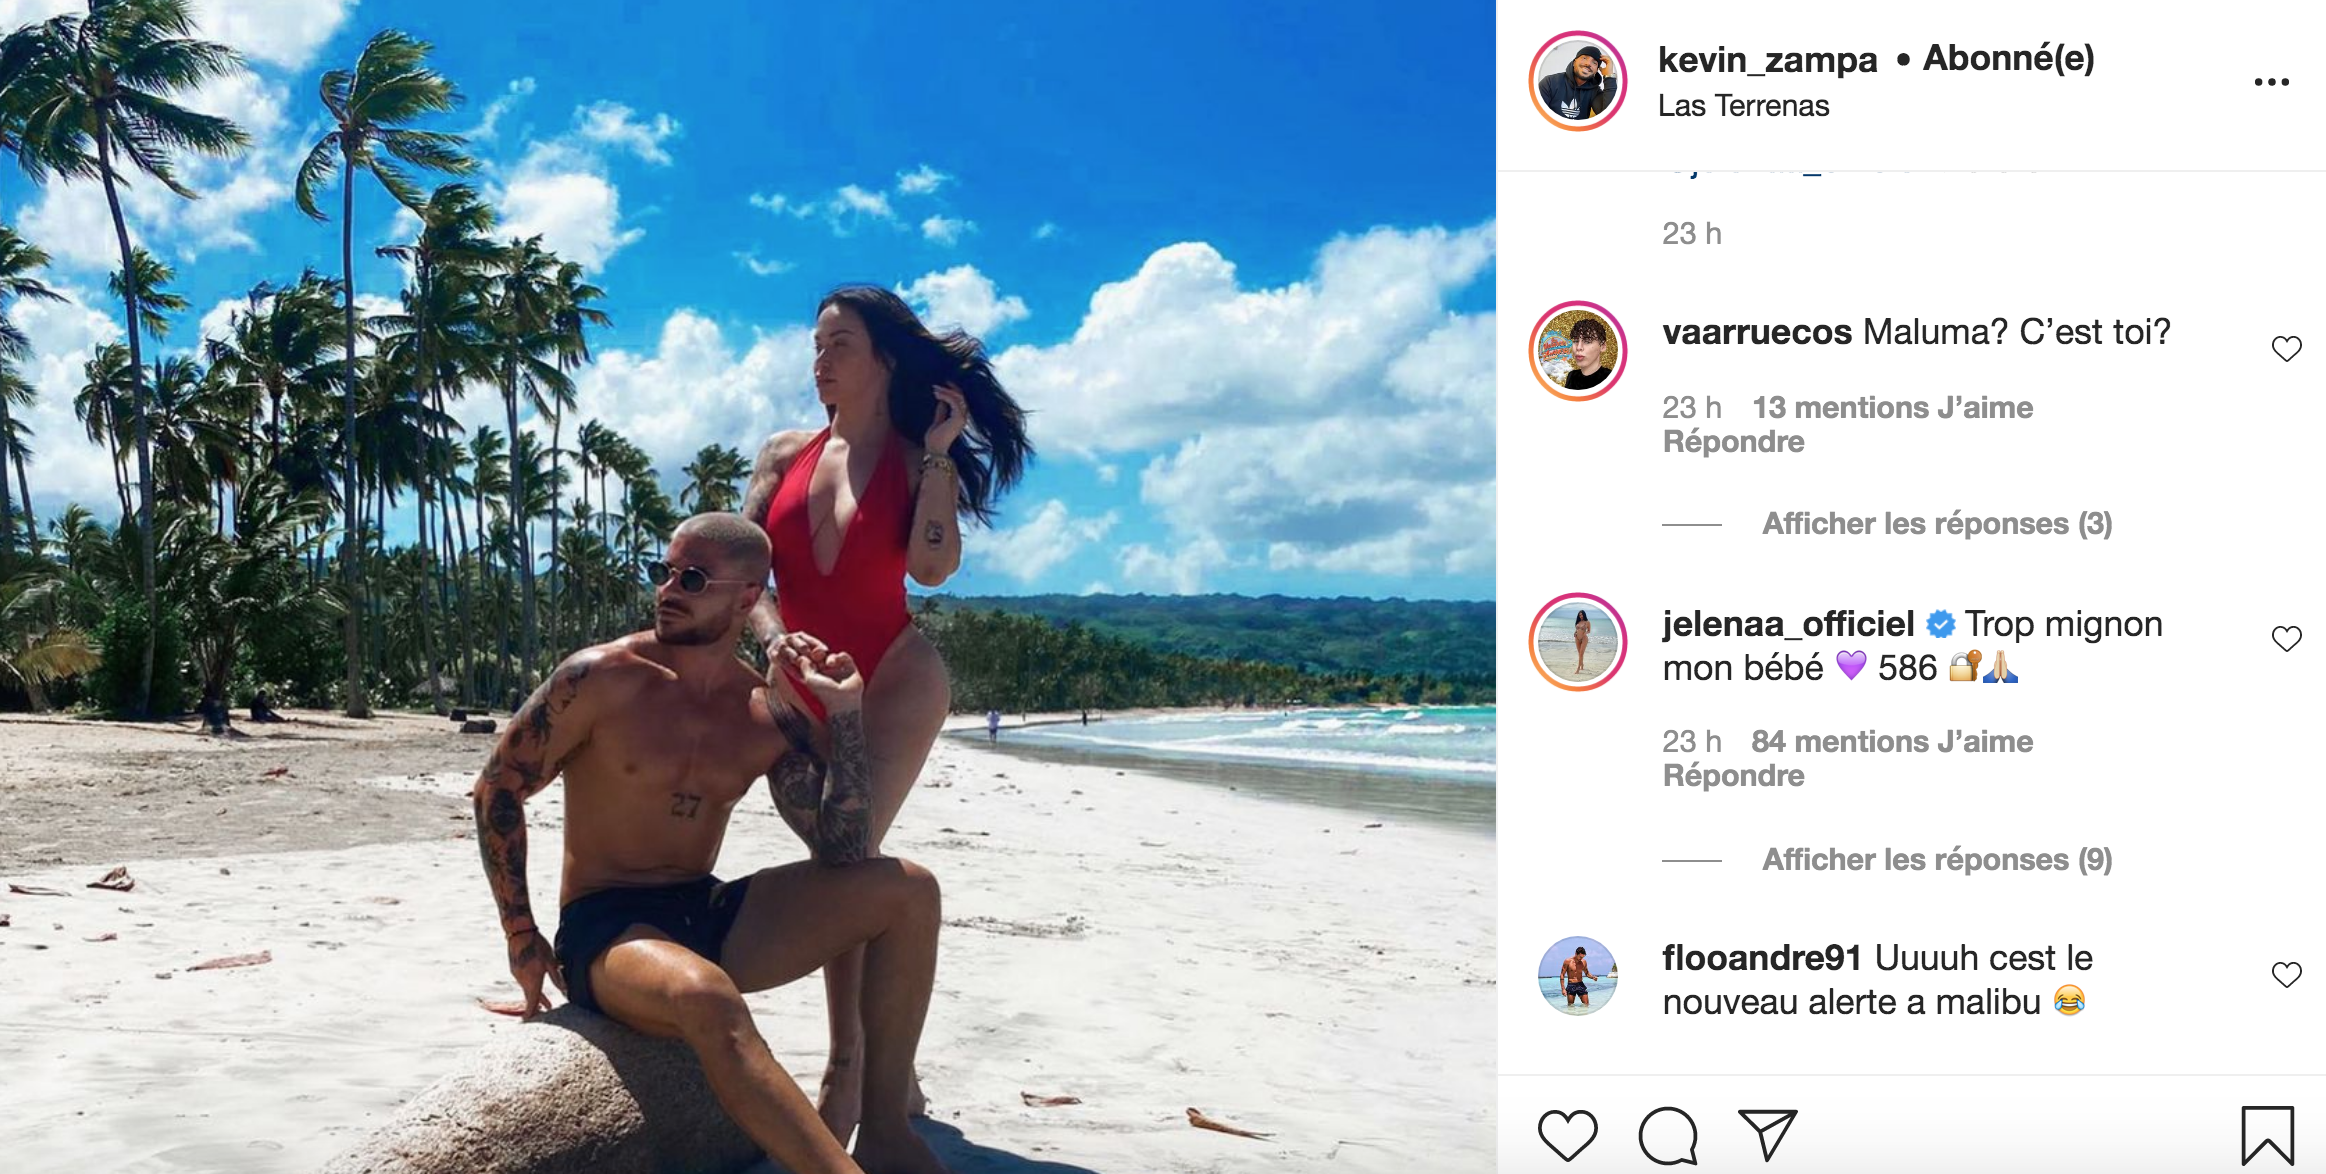  Jelena commente la publication de Kévin Zampa et confirme leur relation @ Instagram